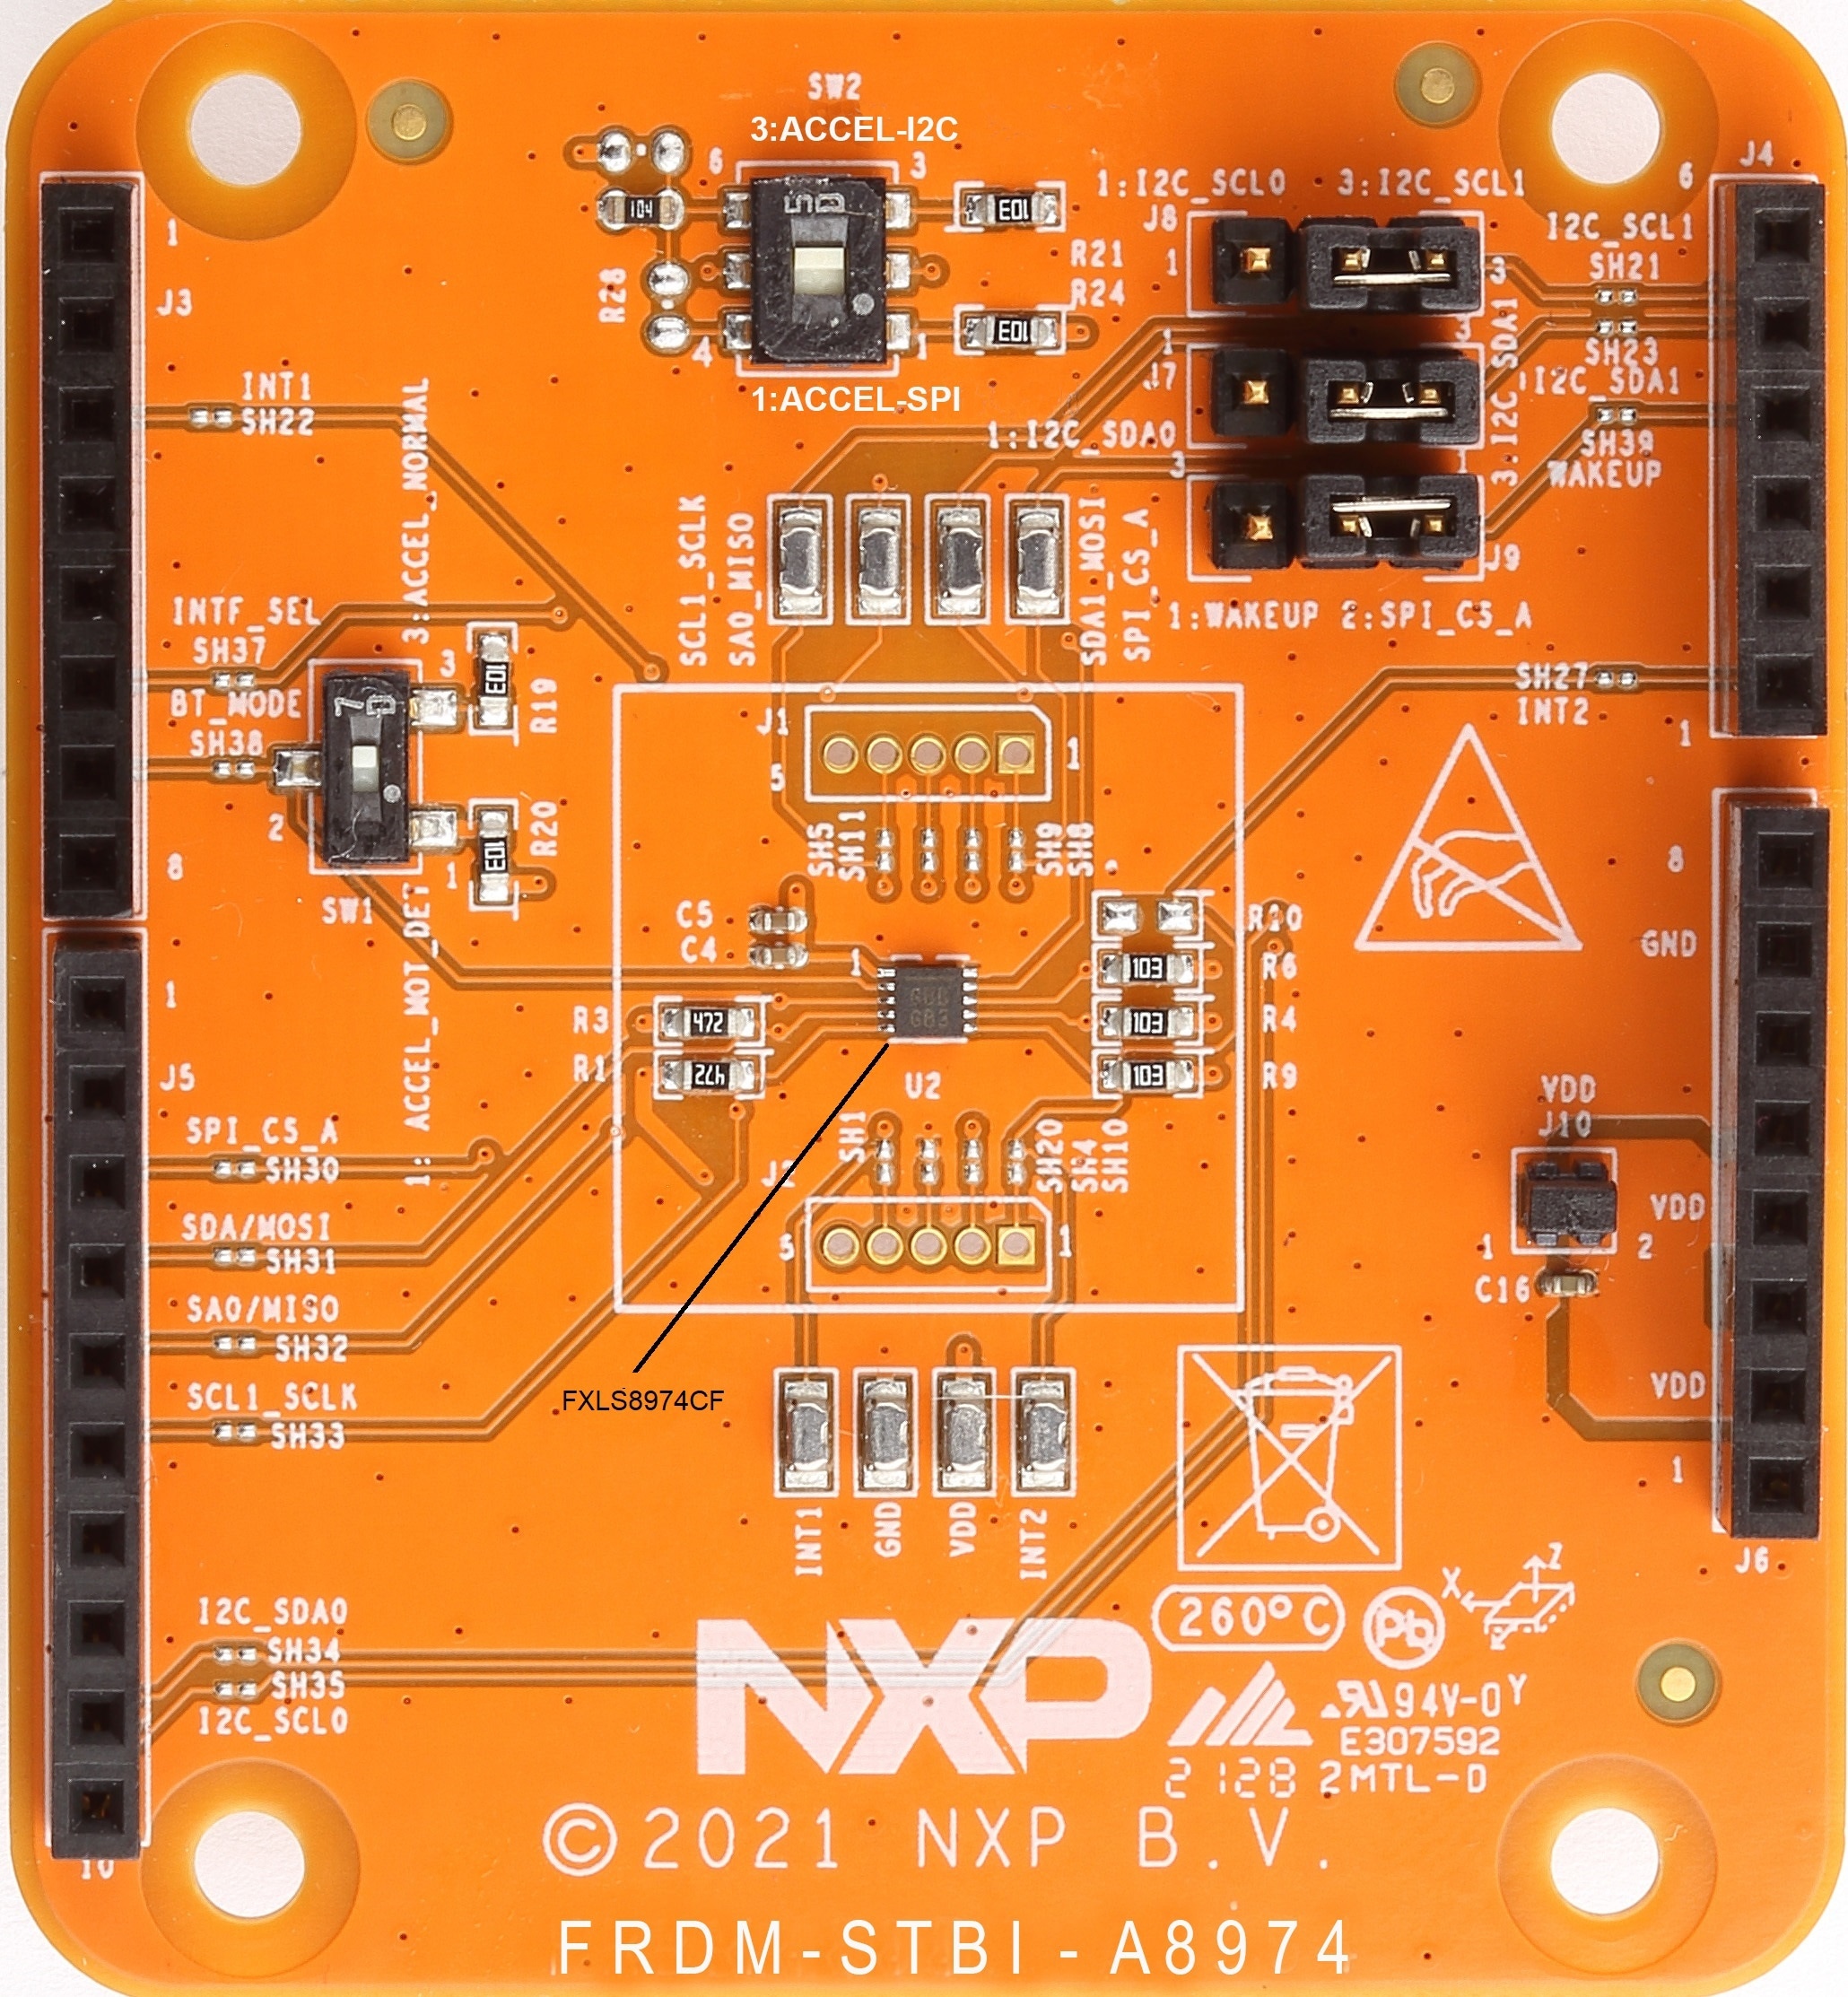 FRDM-K22F-A8974 sensor toolbox development board